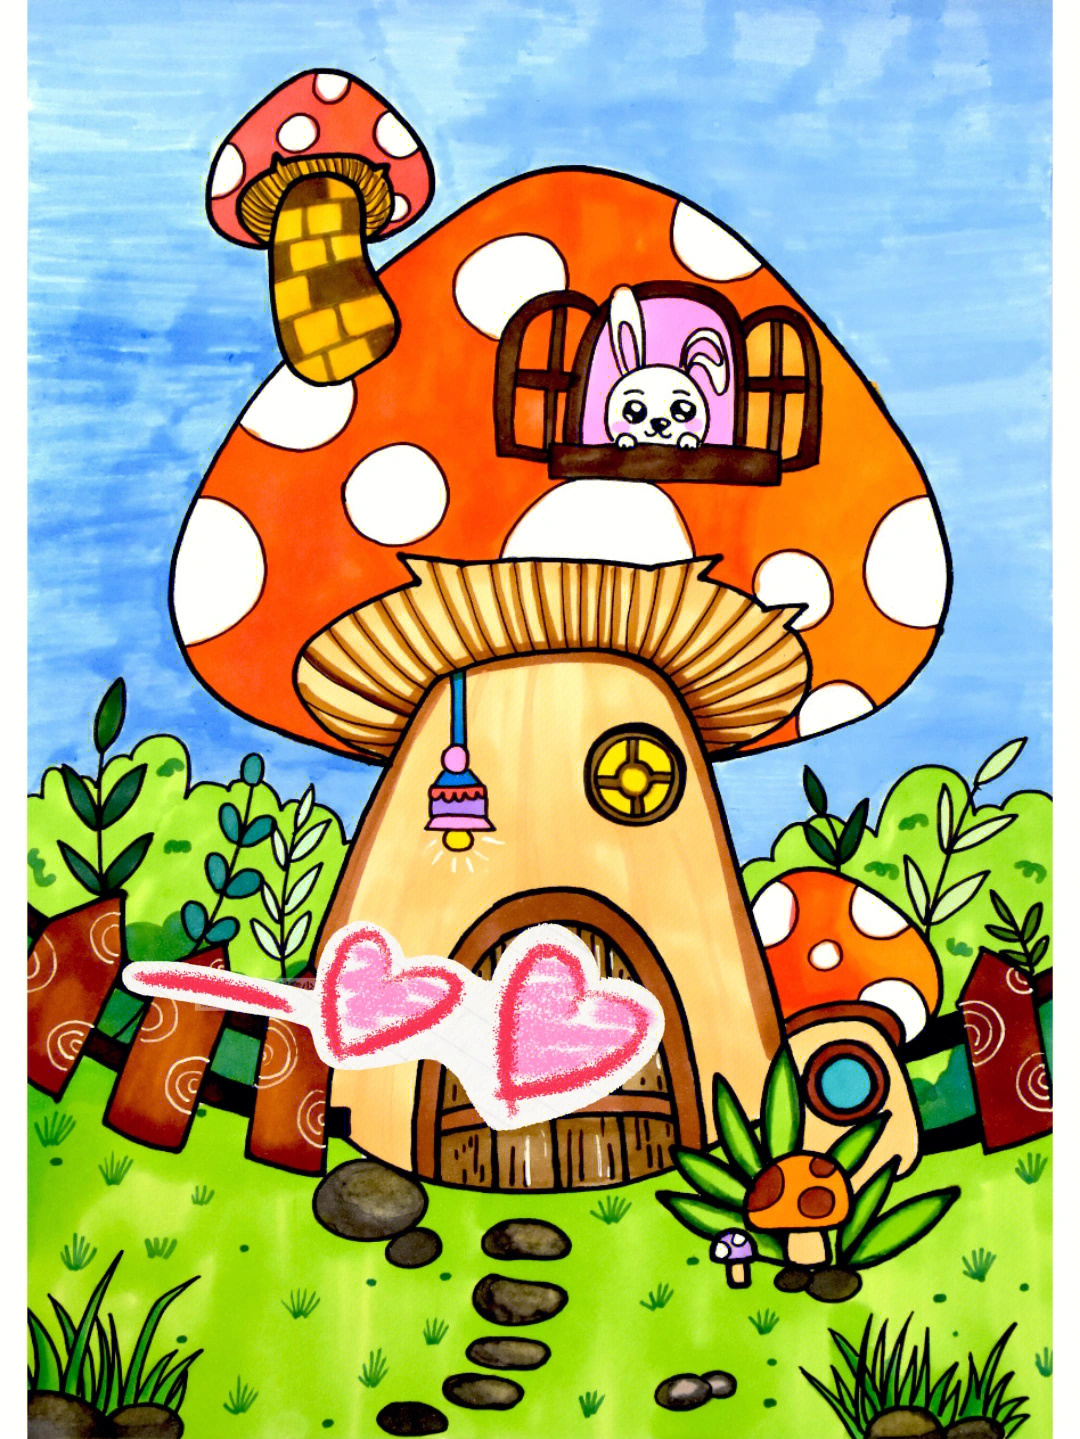 可爱的蘑菇屋观察蘑菇的图片,分析蘑菇的外形特征与结构,用线描的绘画